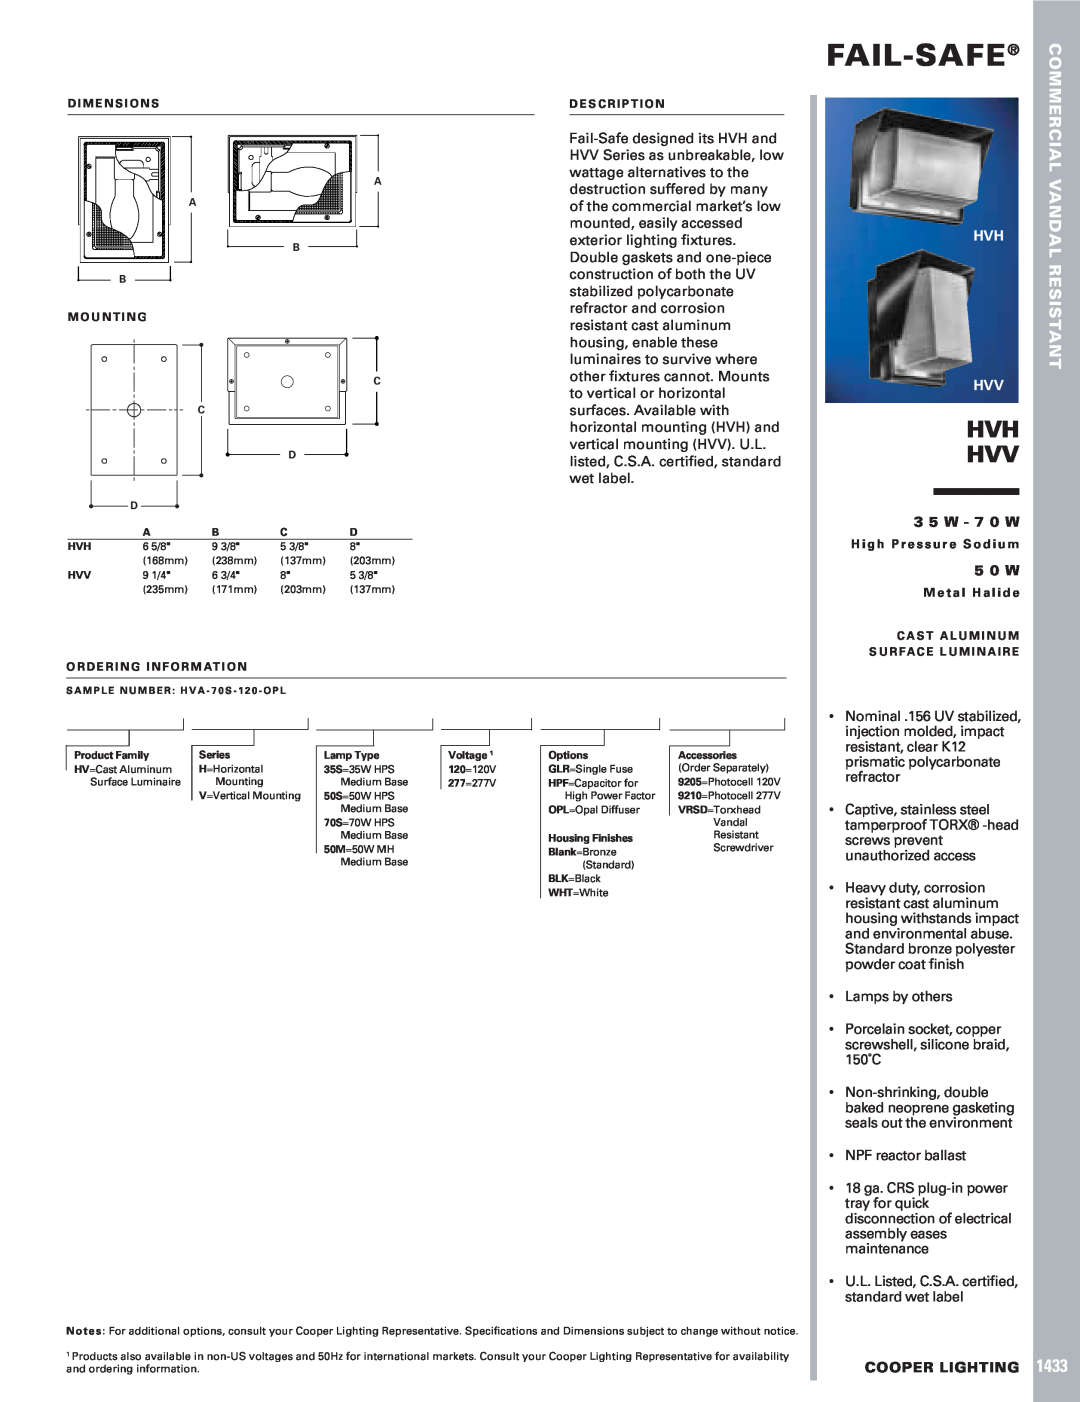 Cooper Lighting HVV, 1433 specifications Fail-Safe, Hvh Hvv, Vandal, Resistant, 3 5 W - 7 0 W, 5 0 W, Cooper Lighting 